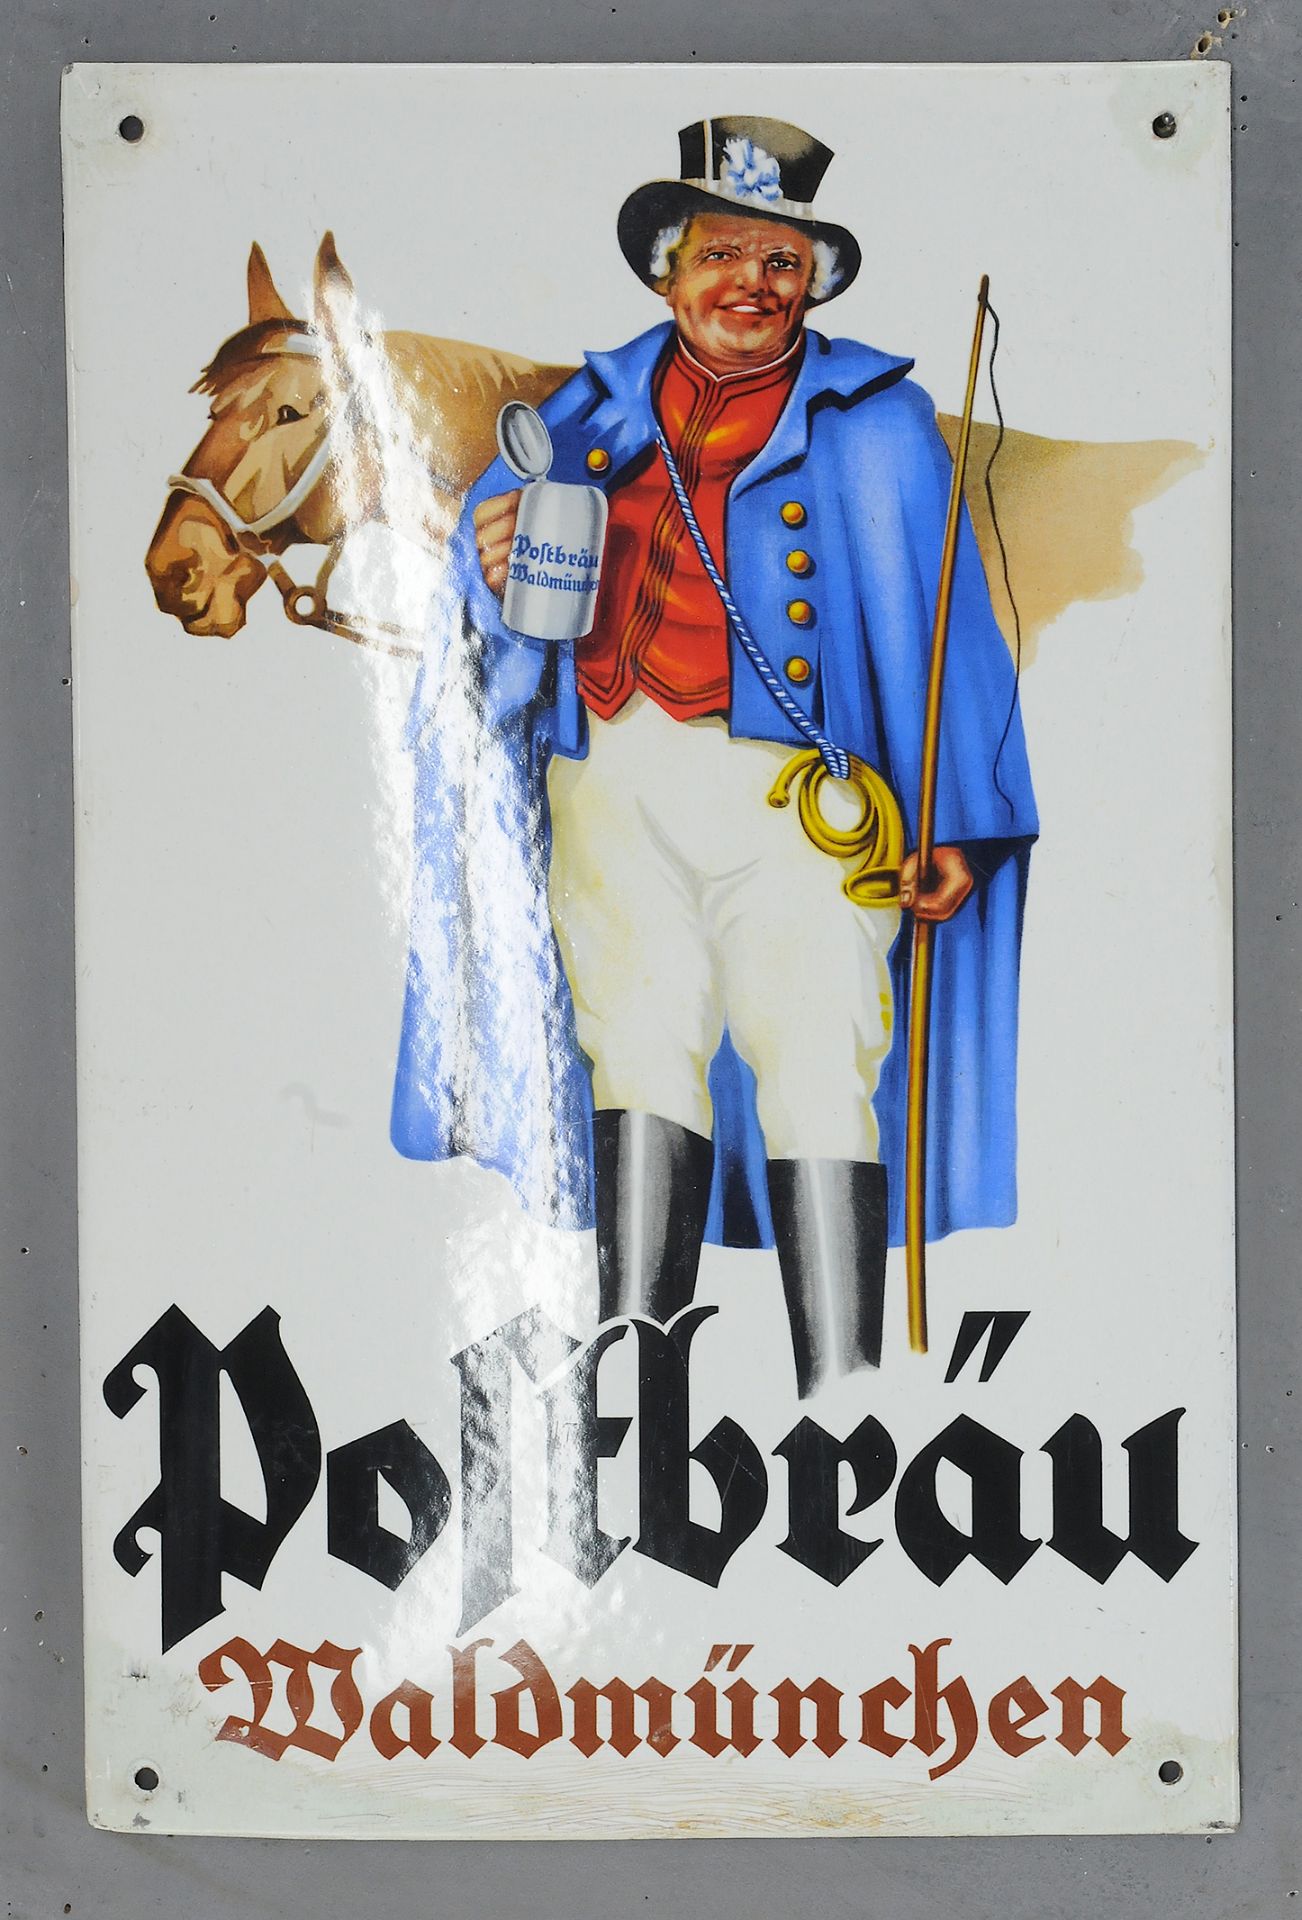 Postbräu - Image 3 of 3